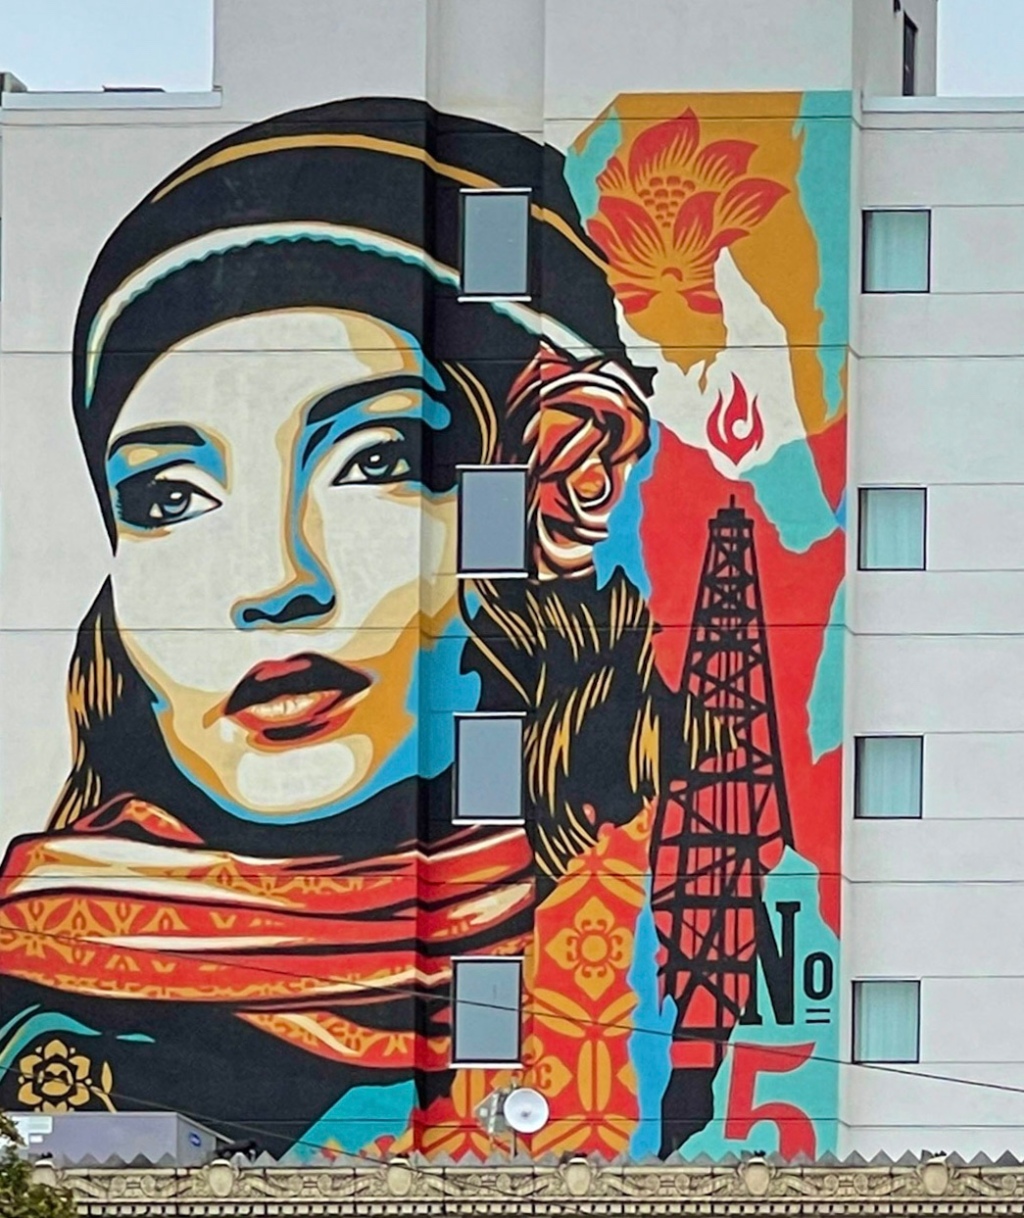 Street Art Seattle – “Obey Fire Sale” Mural